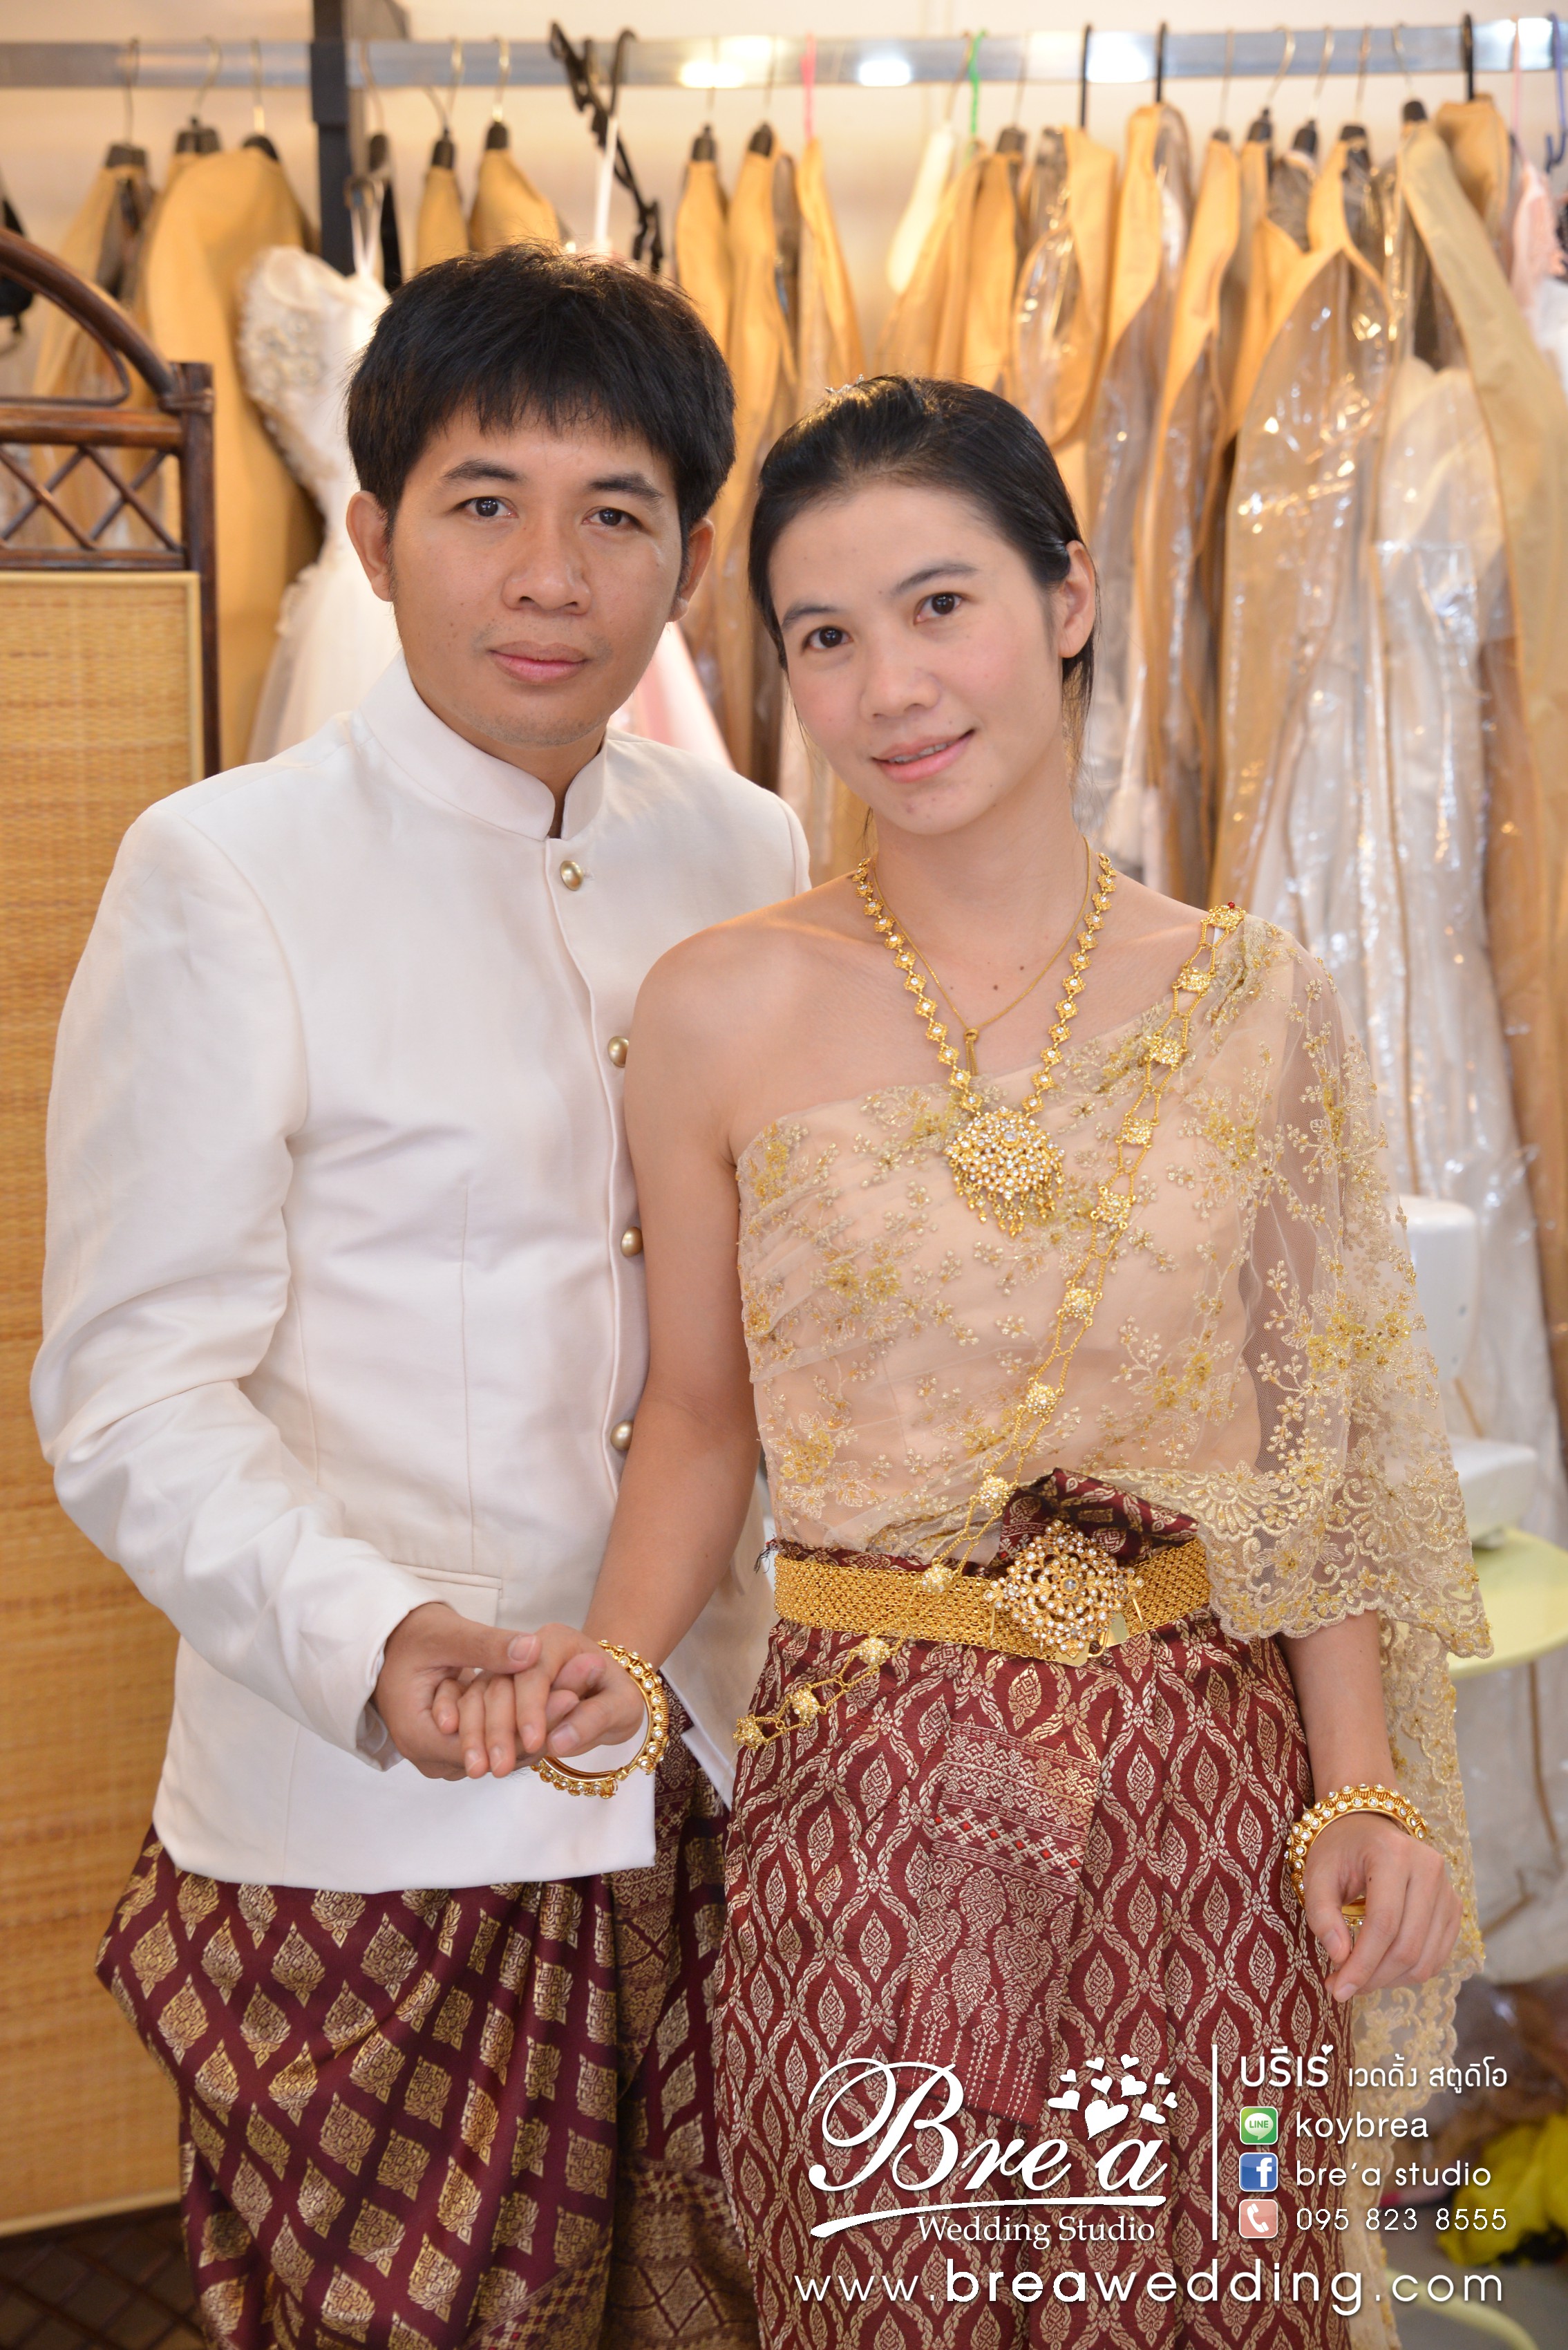 ชุดแต่งงาน ชุดเจ้าสาว ชุดไทยแต่งงาน ร้านเวดดิ้ง ร้านชุดแต่งงาน ถ่ายภาพแต่งงาน นนทบุรี